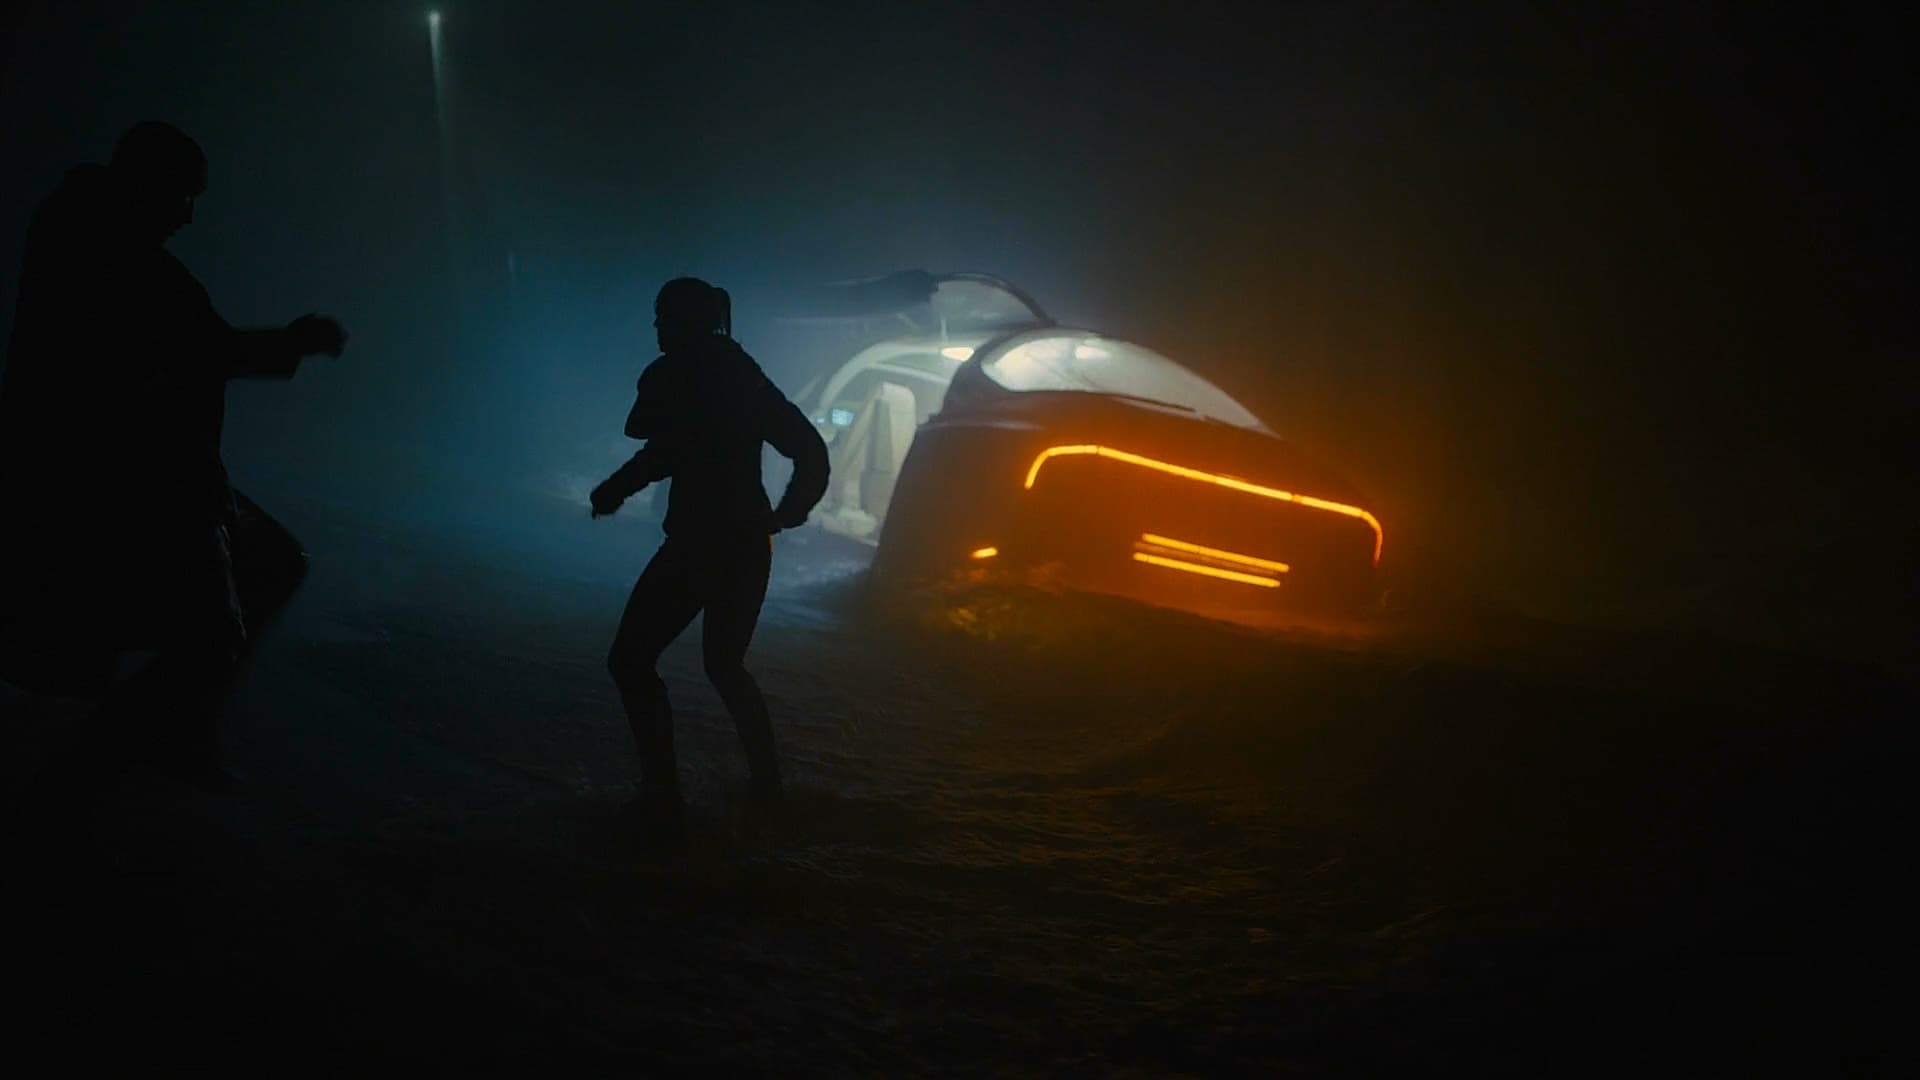 Image du film Blade Runner 2049 dkg2t2e0u2x8h00lqpcbrqva1ghjpg